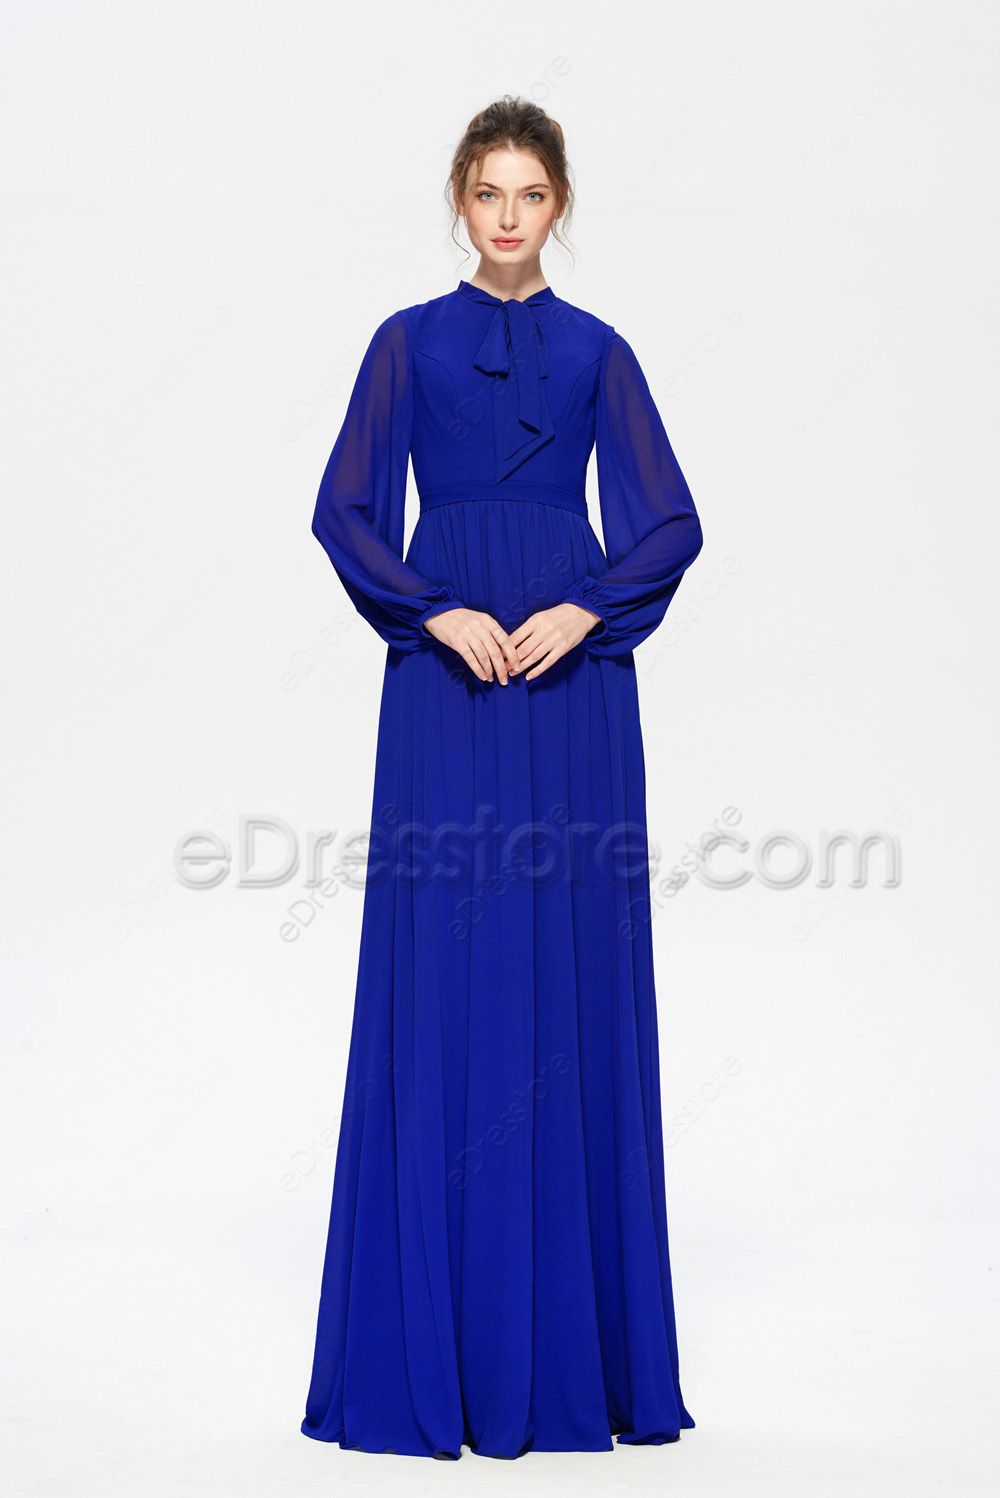 Modest Mormon Cobalt Blue Bridesmaid Dresses Long Sleeves | eDresstore